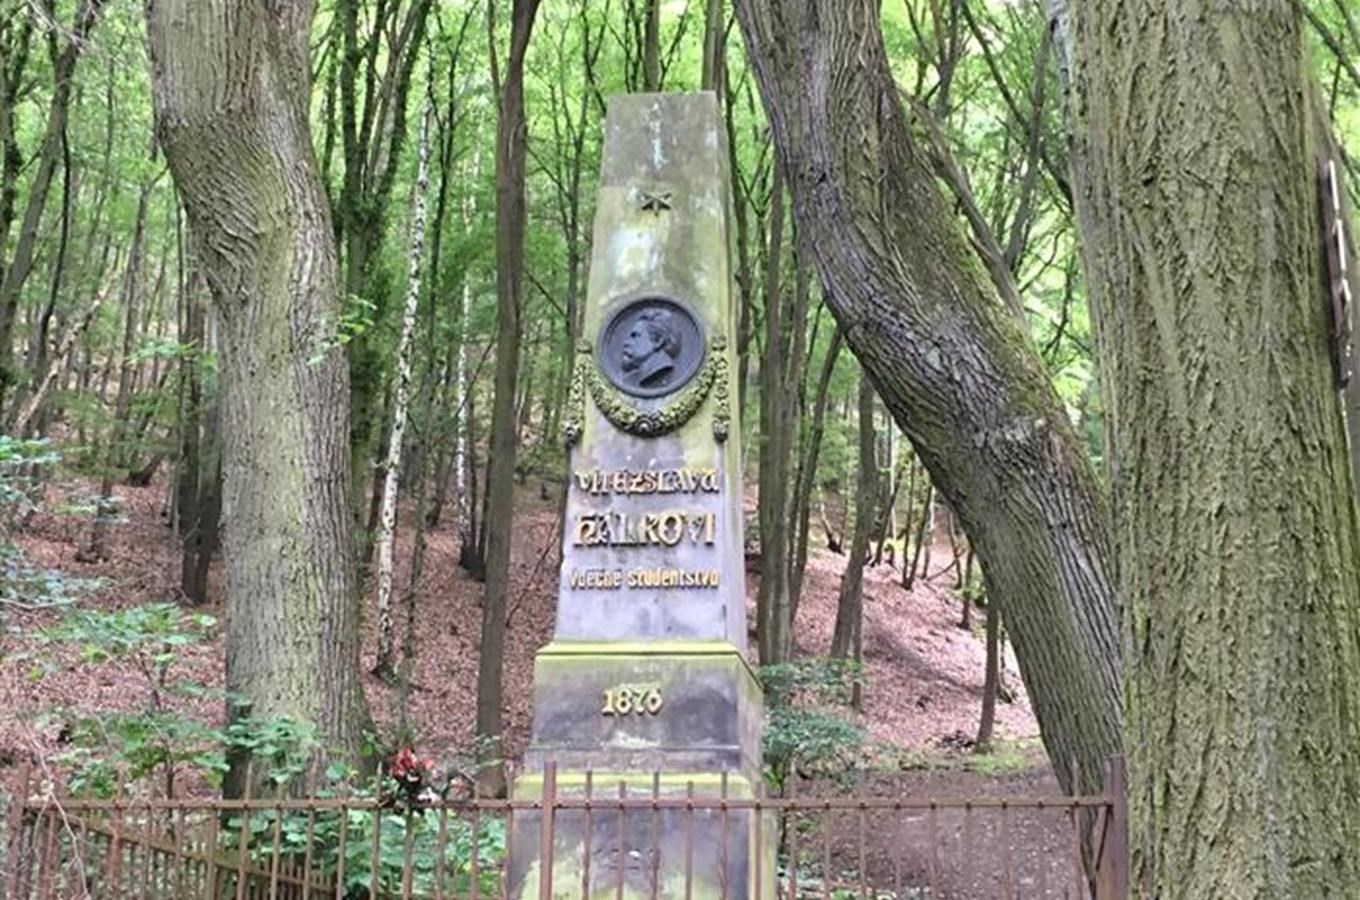 Pomník Vítězslava Hálka v Břežanském údolí